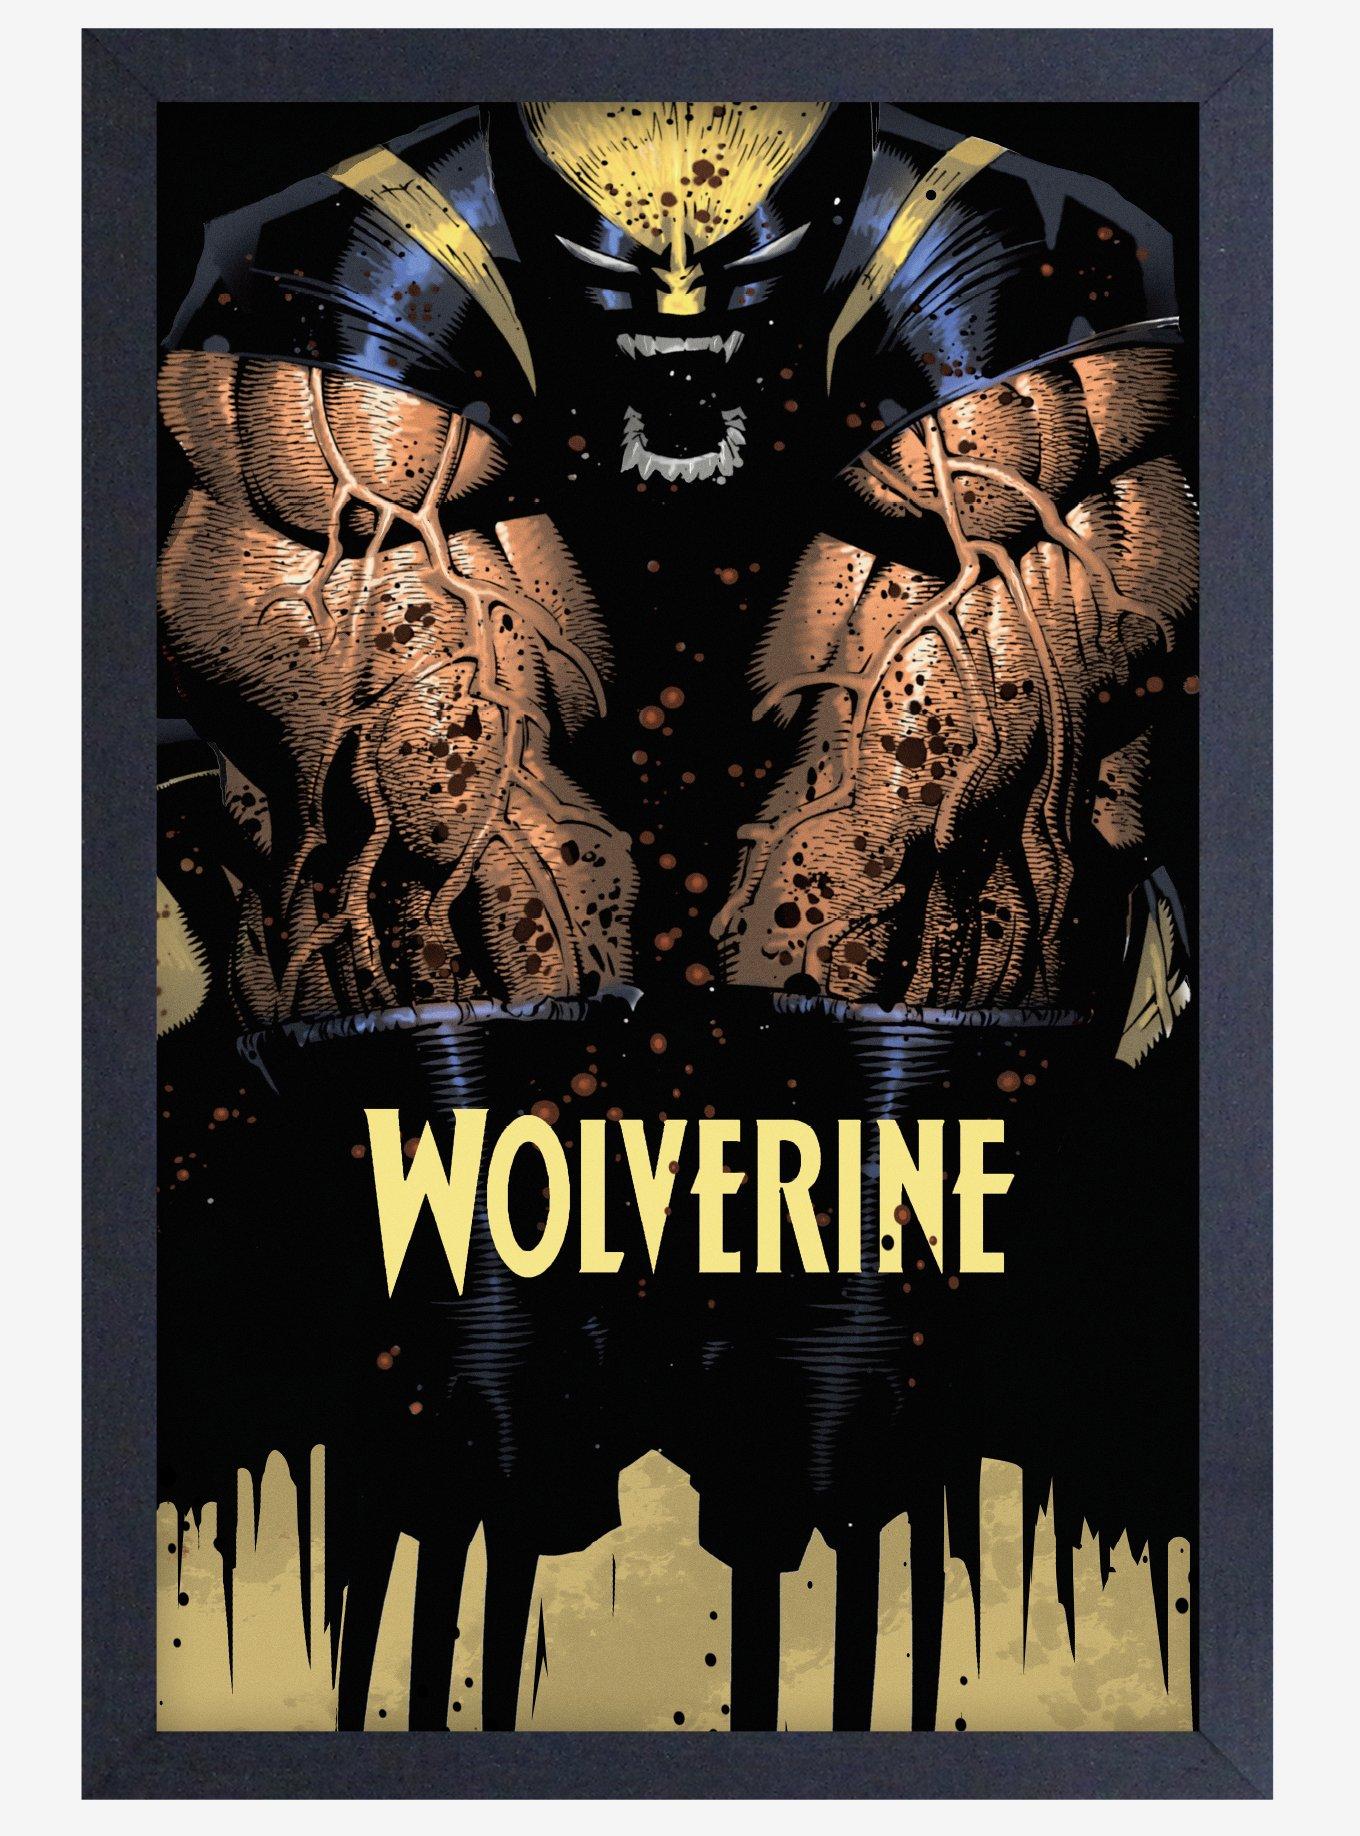 Loungefly Marvel X-Men Wolverine Metallic Suit Small Zip Wallet